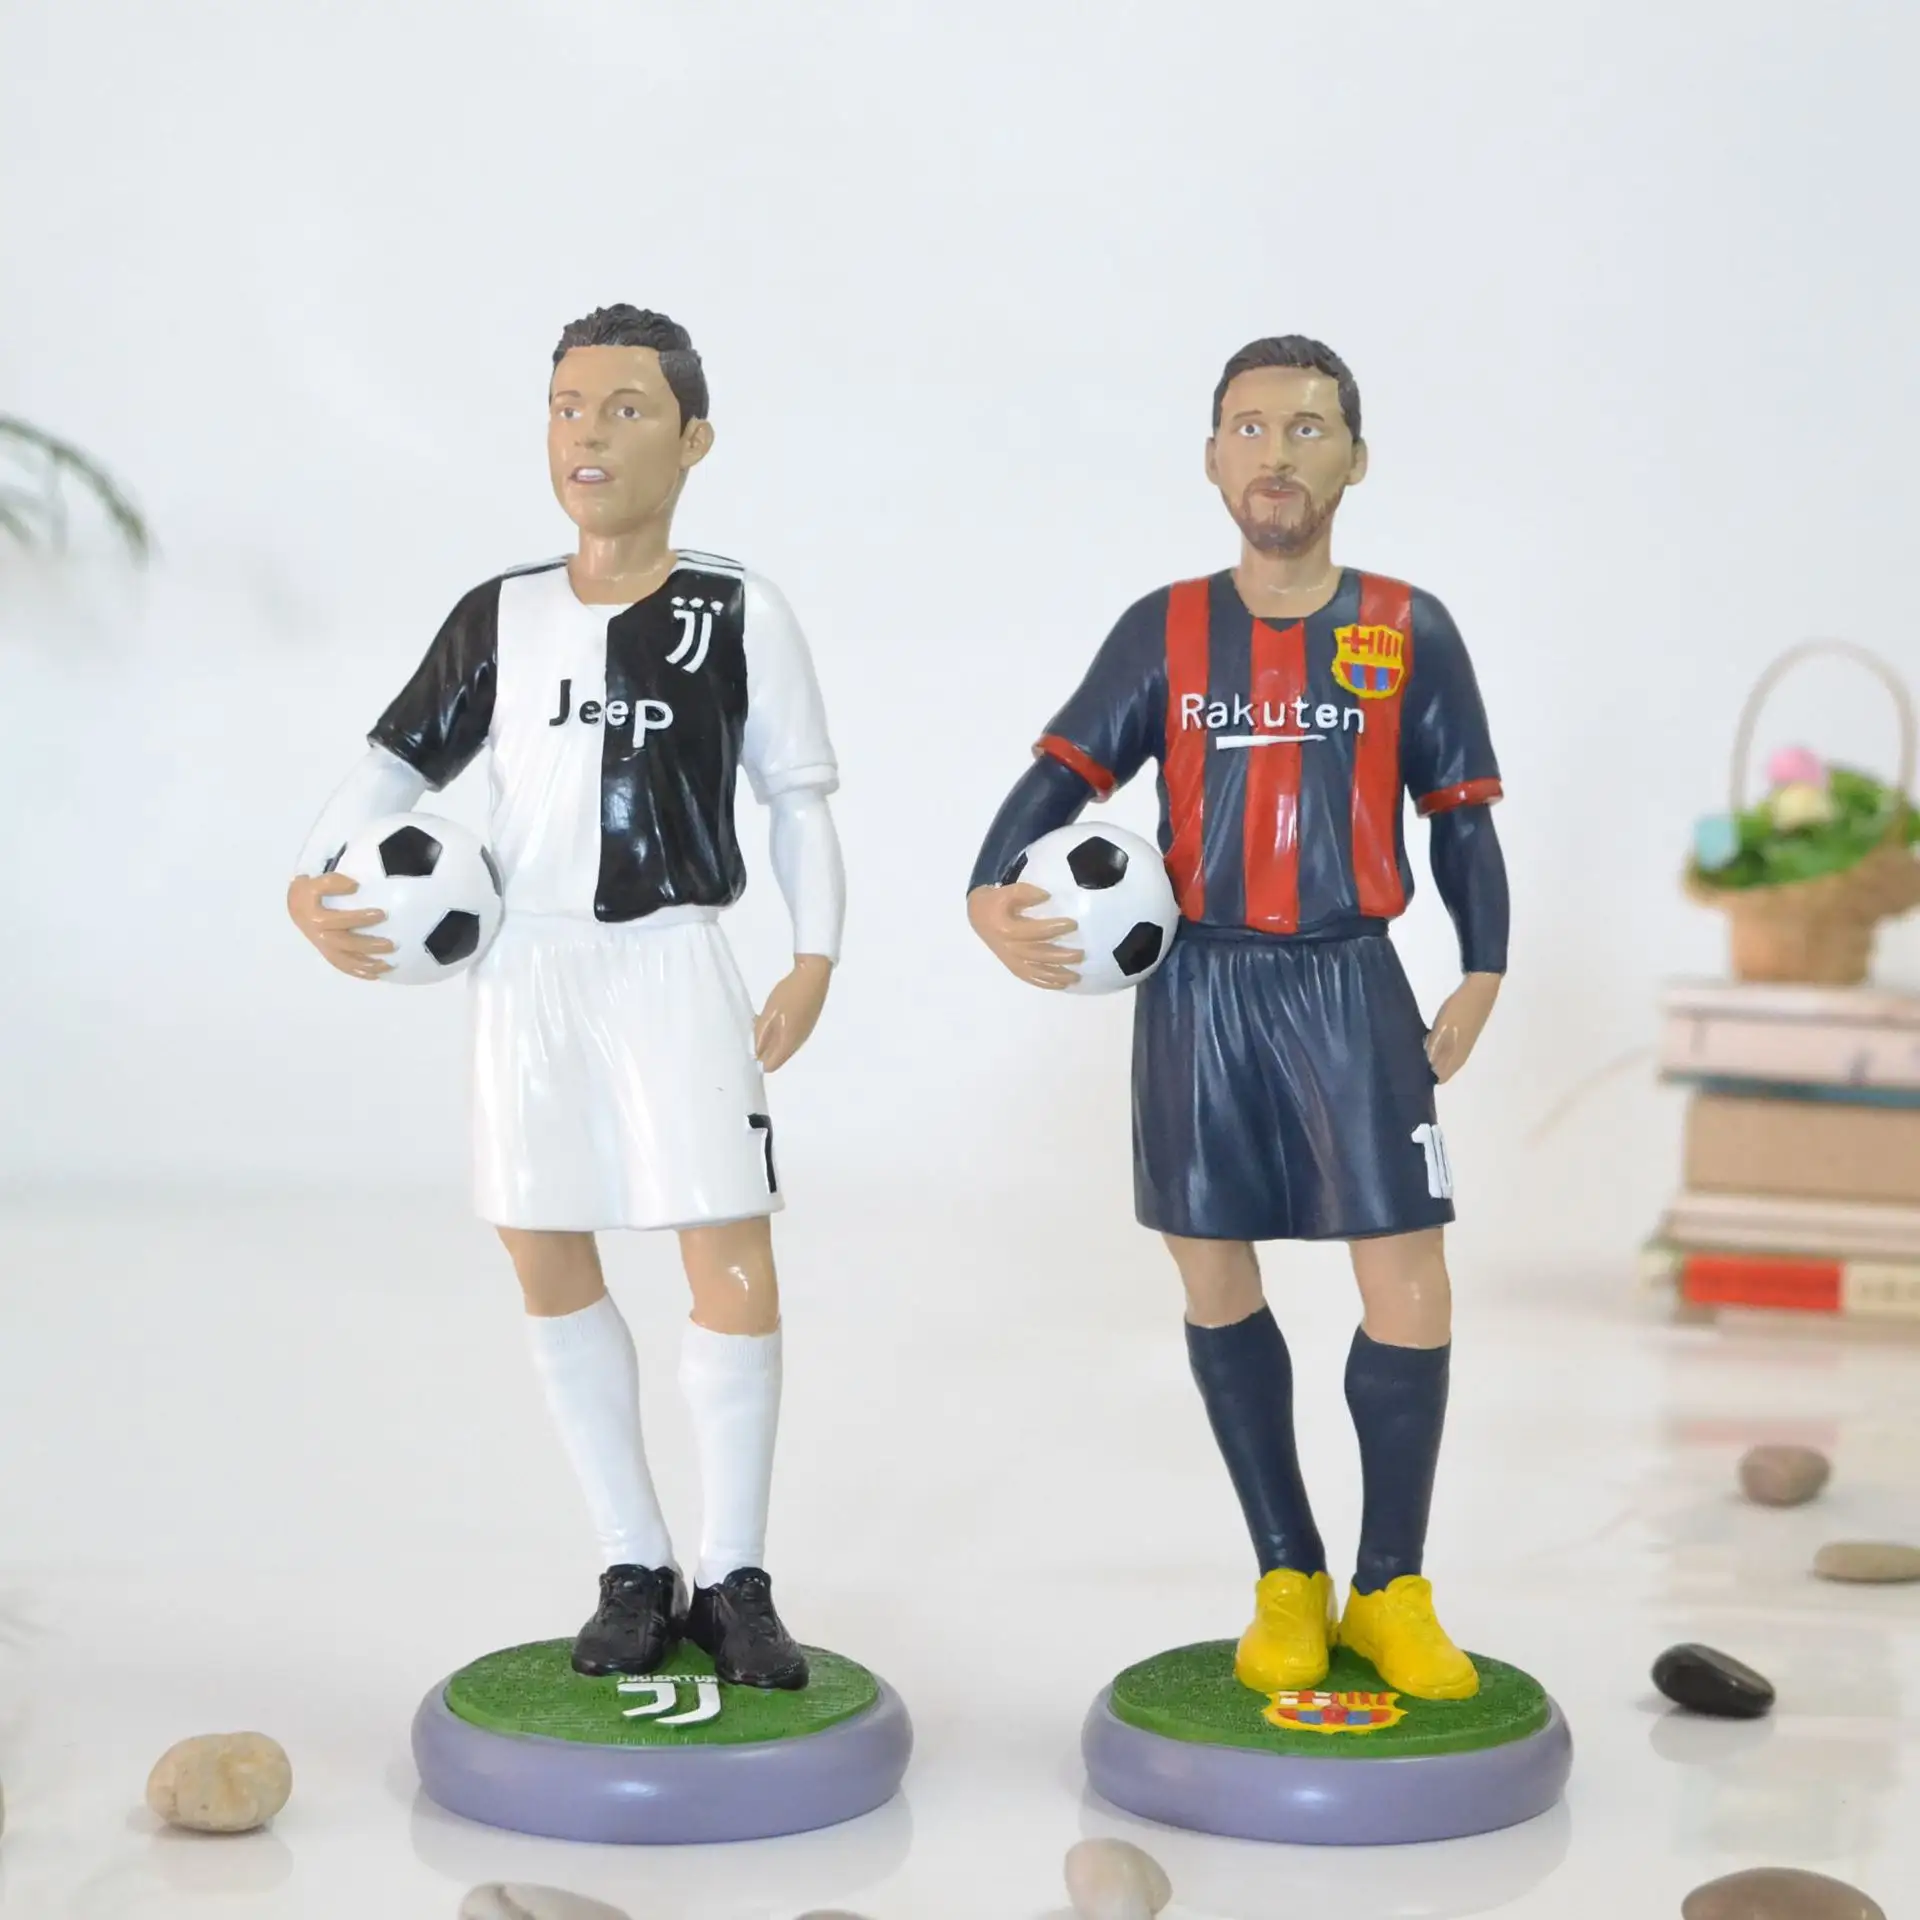 Decoração barata para carros de bonecas estrelas de futebol e basquete, personagens de presente de aniversário em torno da figura bobblehead